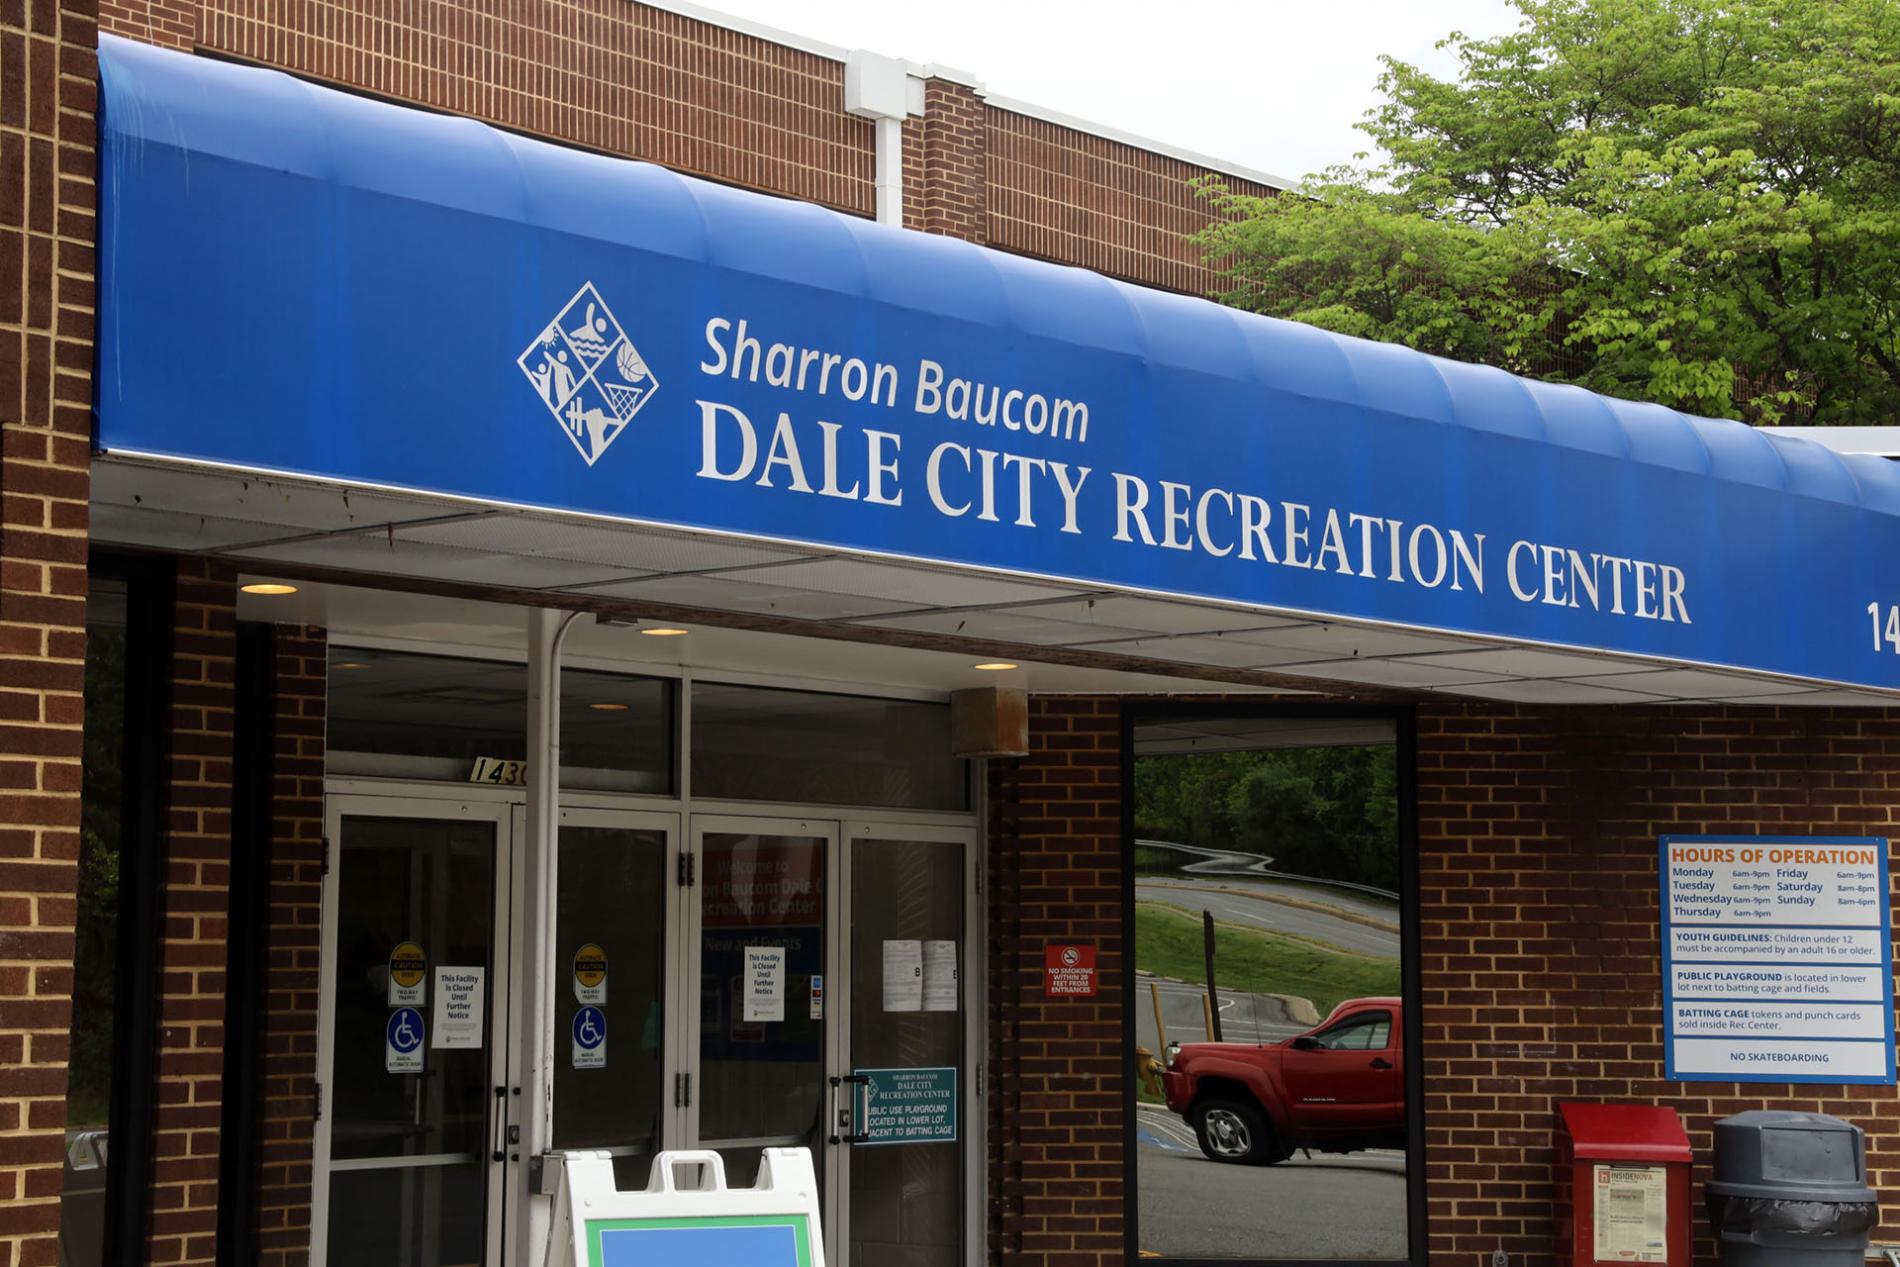 Sharron Baucom Dale City Recreation Center